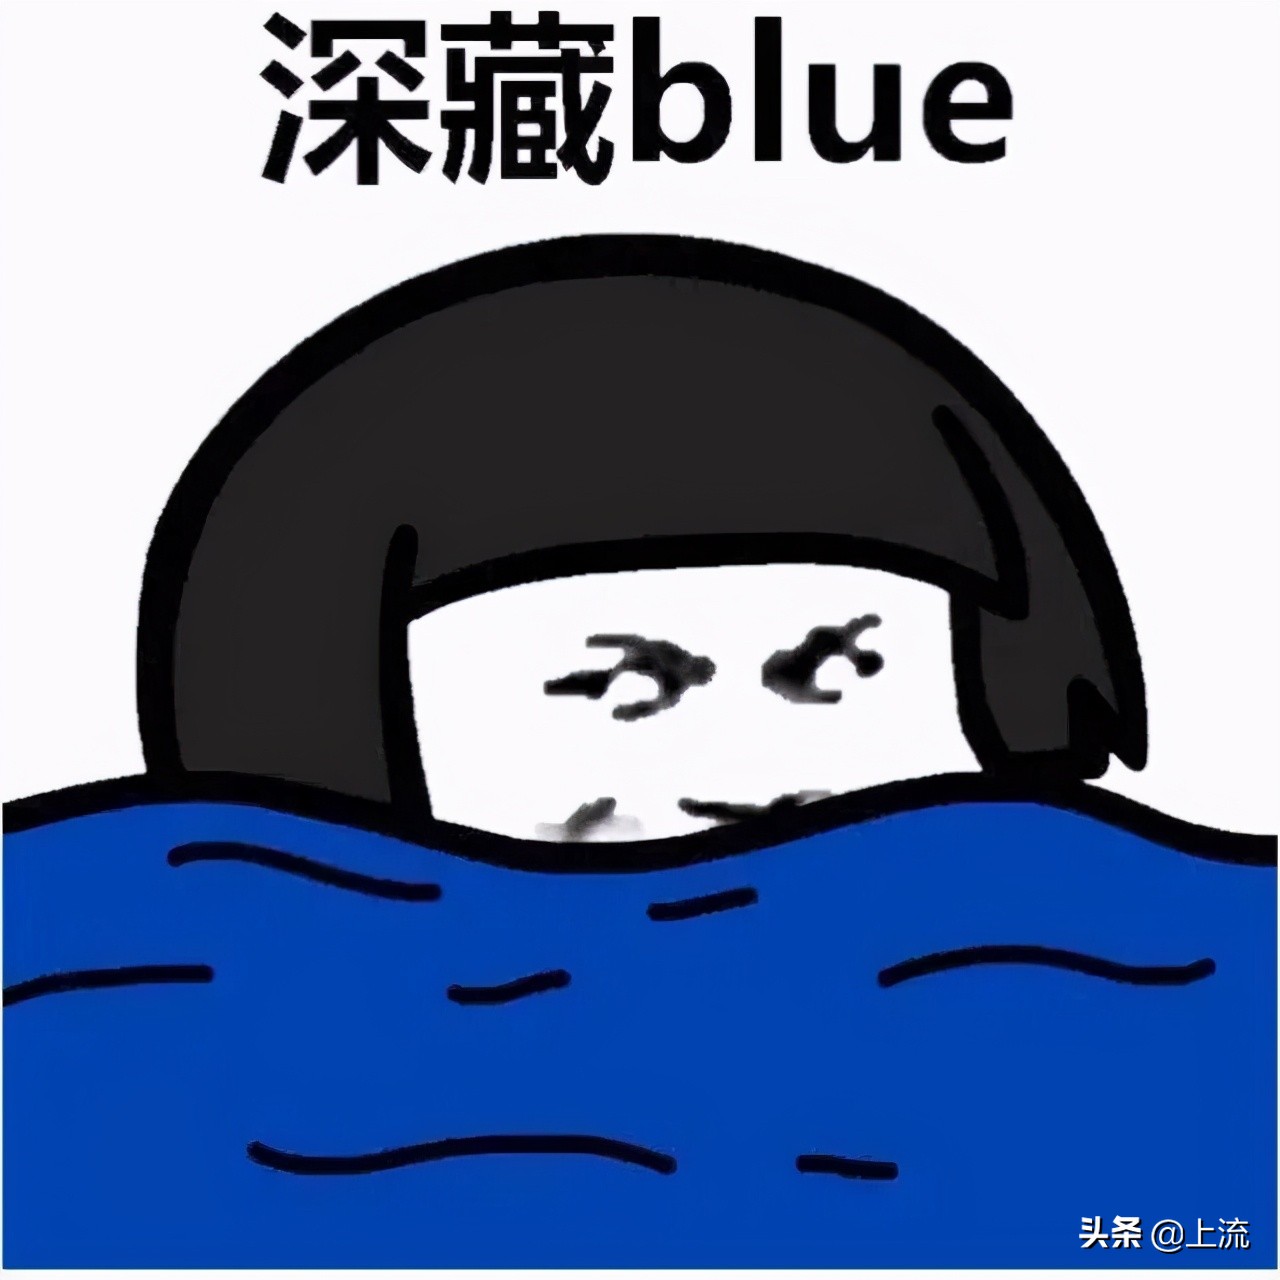 山东蓝翔真的是中国黑客摇篮吗？